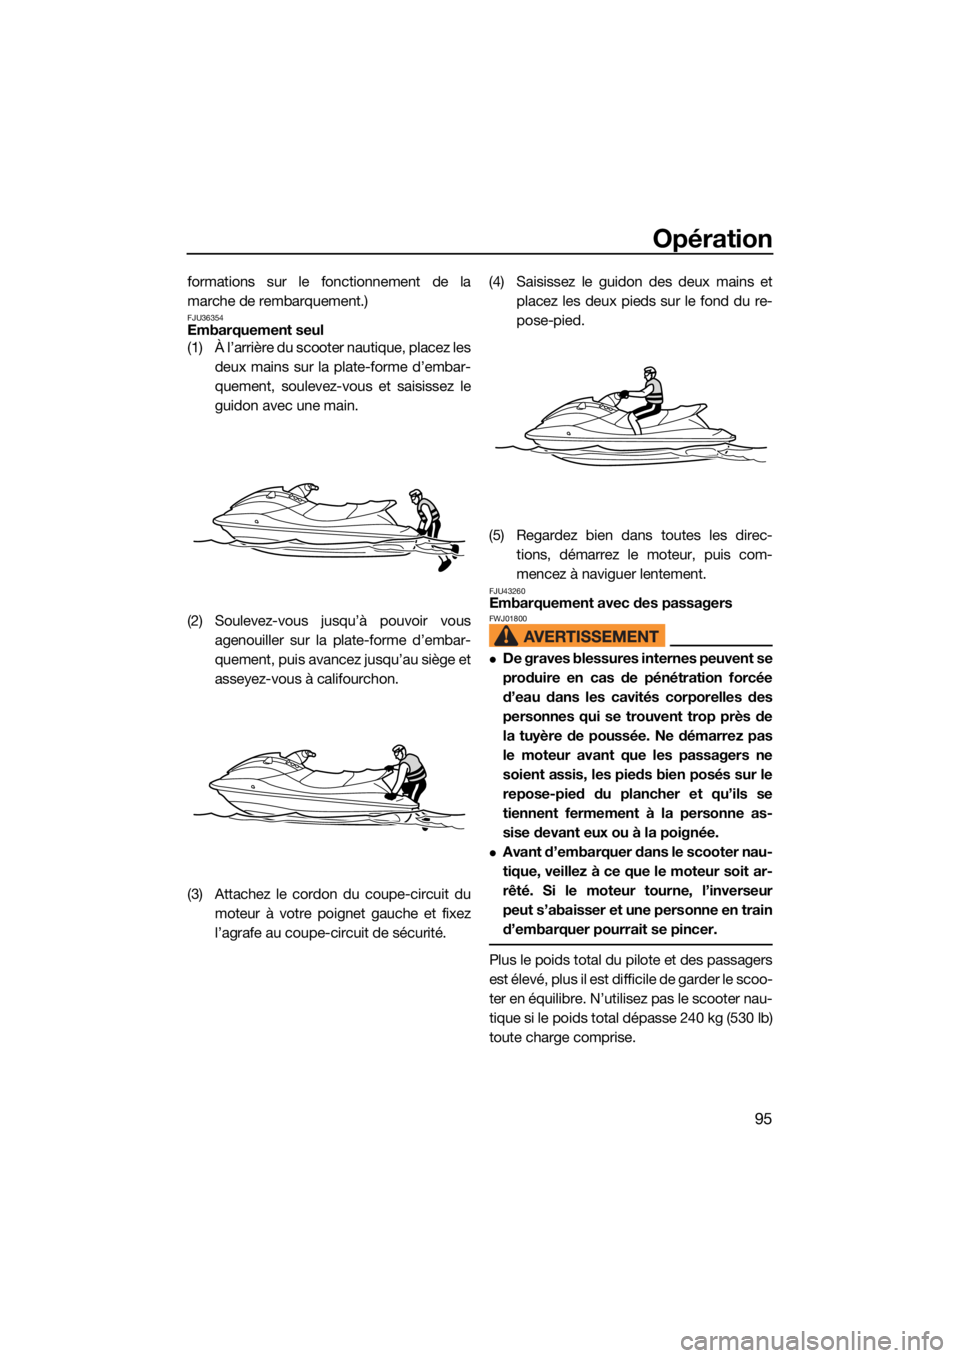 YAMAHA VX 2021  Notices Demploi (in French) Opération
95
formations sur le fonctionnement de la
marche de rembarquement.)
FJU36354Embarquement seul
(1) À l’arrière du scooter nautique, placez lesdeux mains sur la plate-forme d’embar-
que